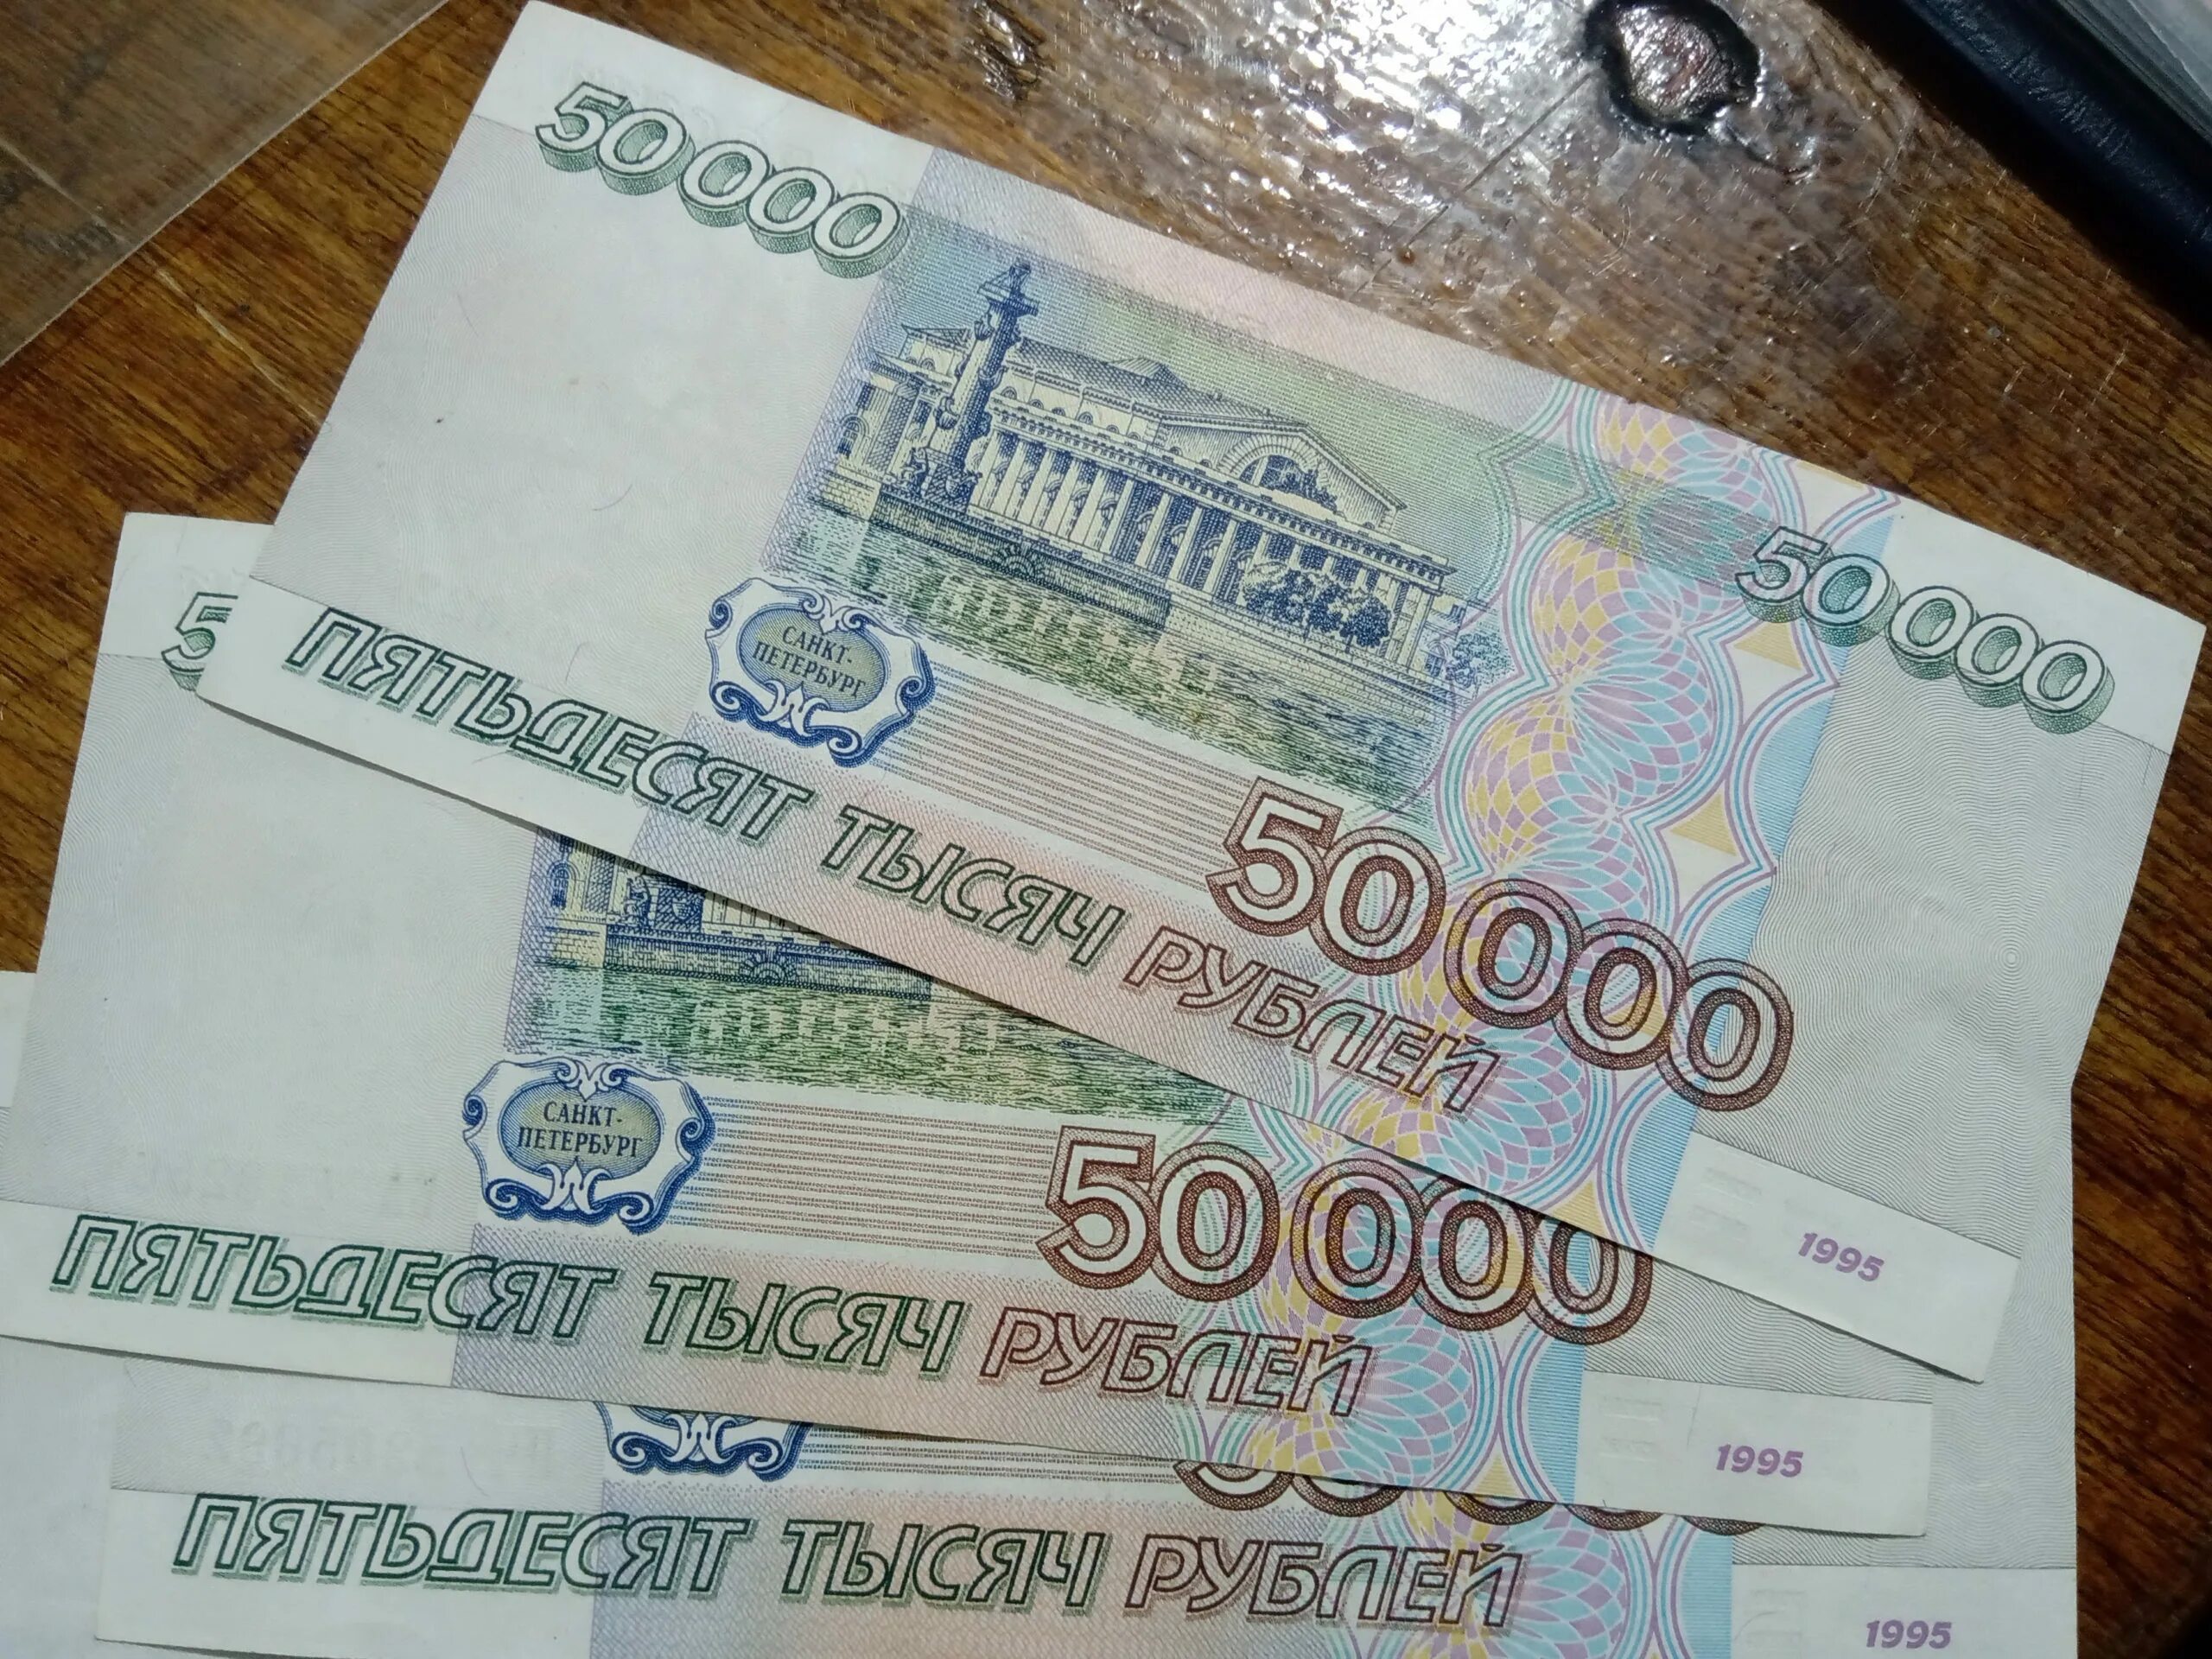 50000 тыс рублей